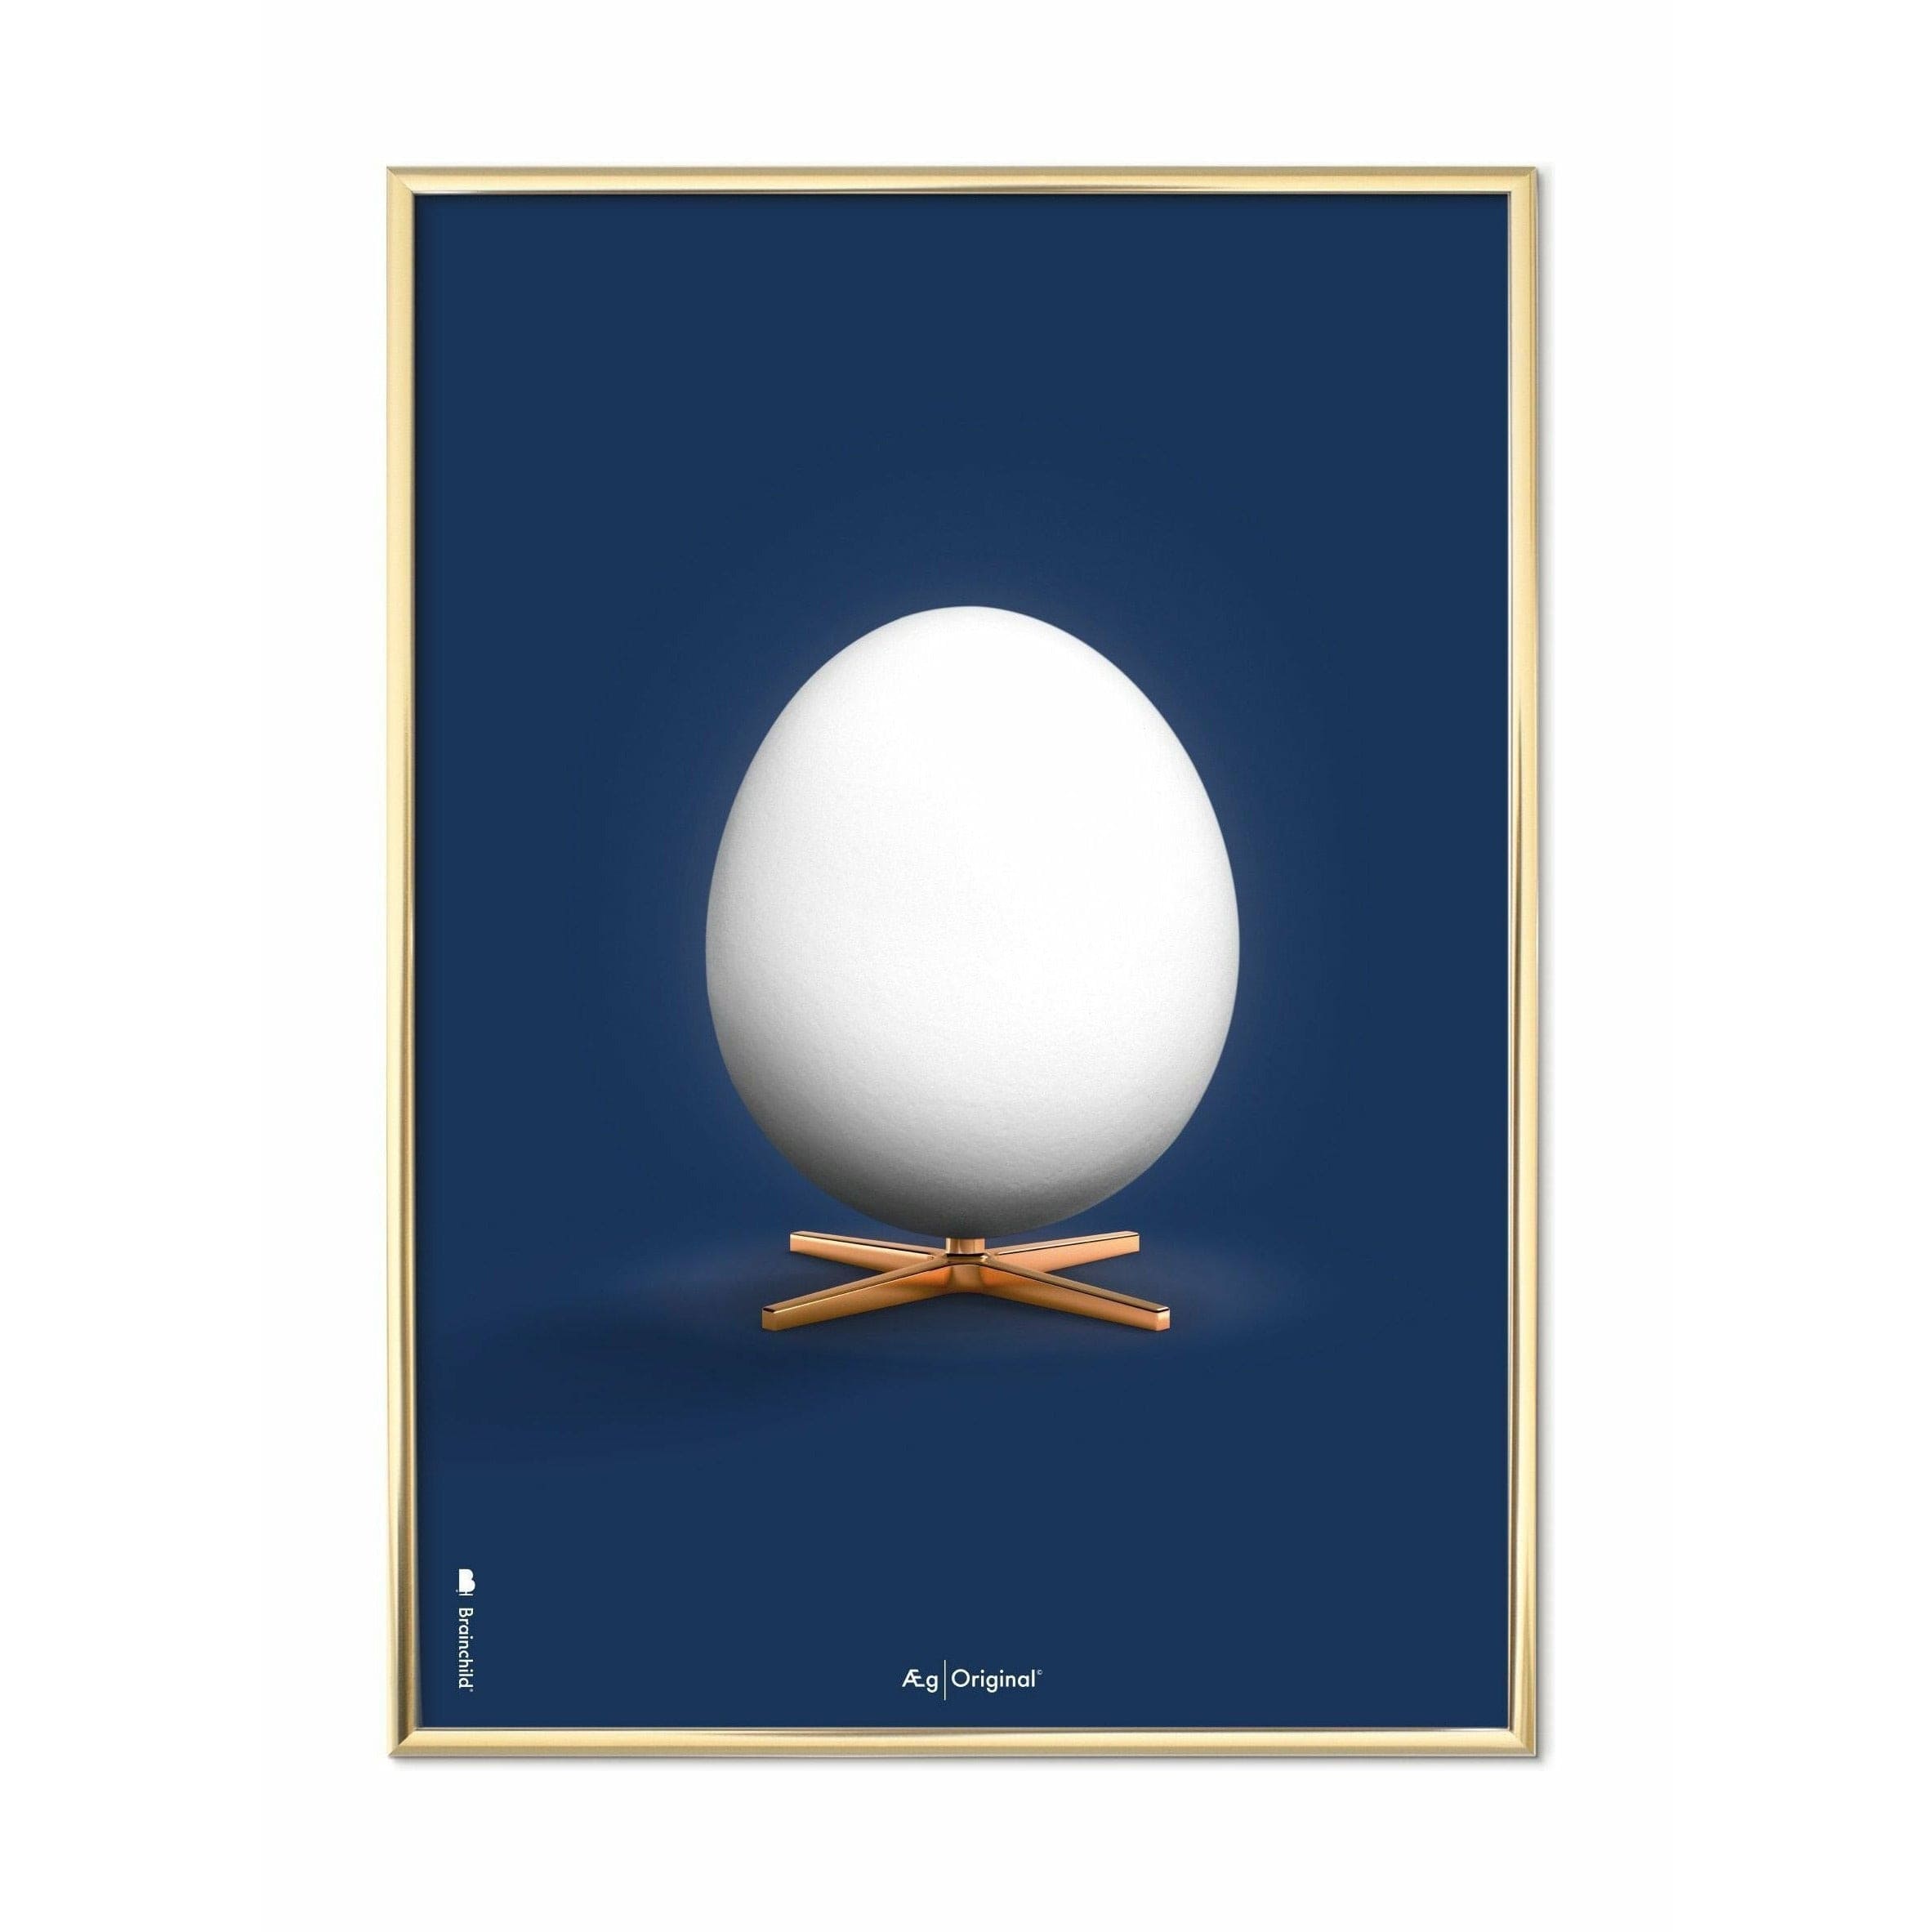 brainchild Egg Classic juliste, messinkivärinen runko 30 x40 cm, tummansininen tausta